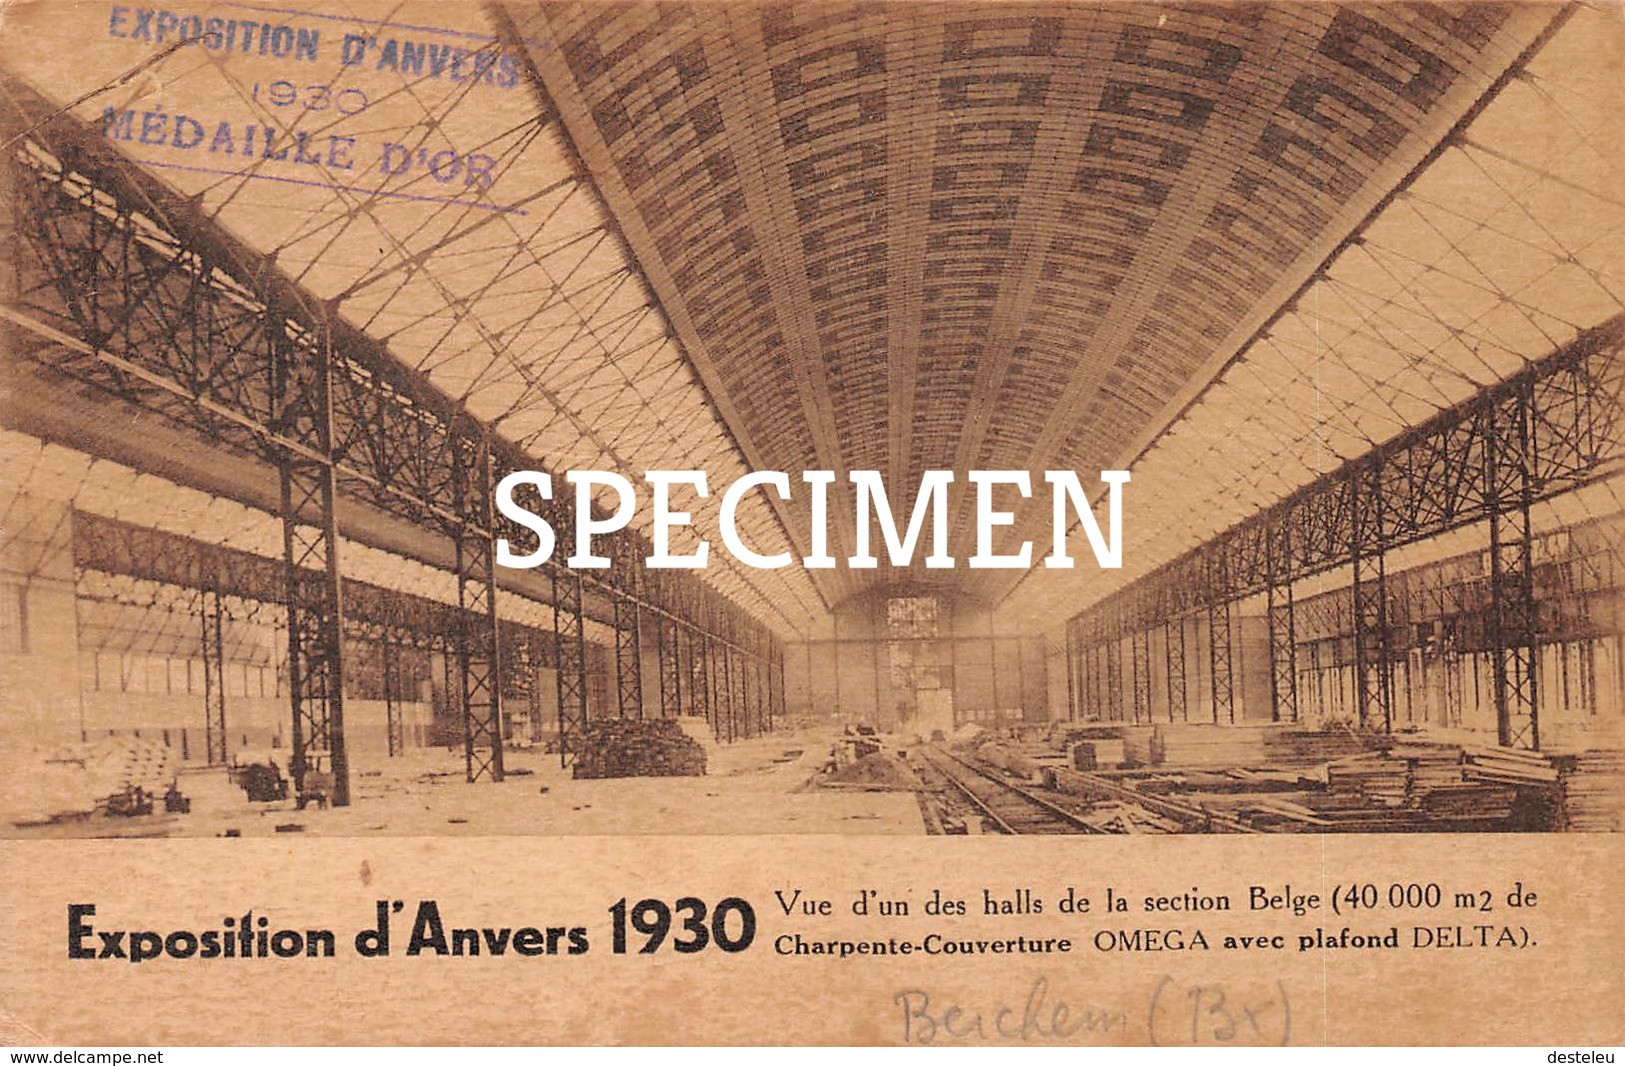 La Charpente-Couverture Oméga - Sint-Agatha-Berchem - Expoistion Anvers 1930 - Berchem-Ste-Agathe - St-Agatha-Berchem